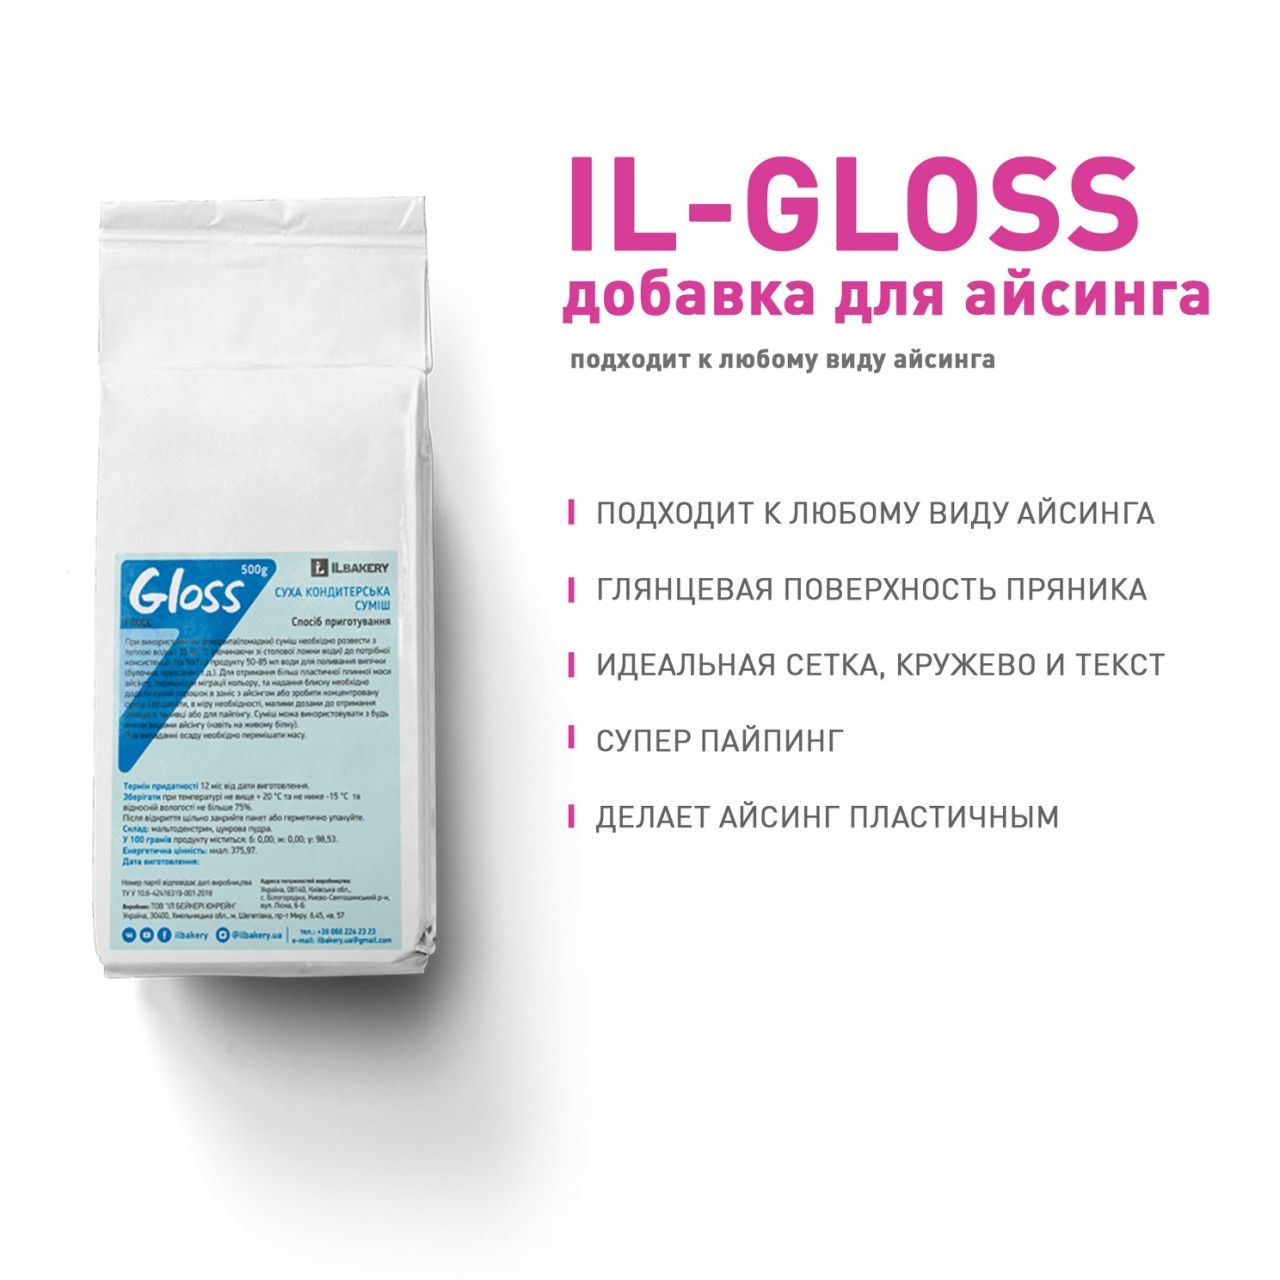 ⋗ Глянец-добавка для блеска айсинга IL-gloss, 200г купить в Украине ➛ CakeShop.com.ua, фото